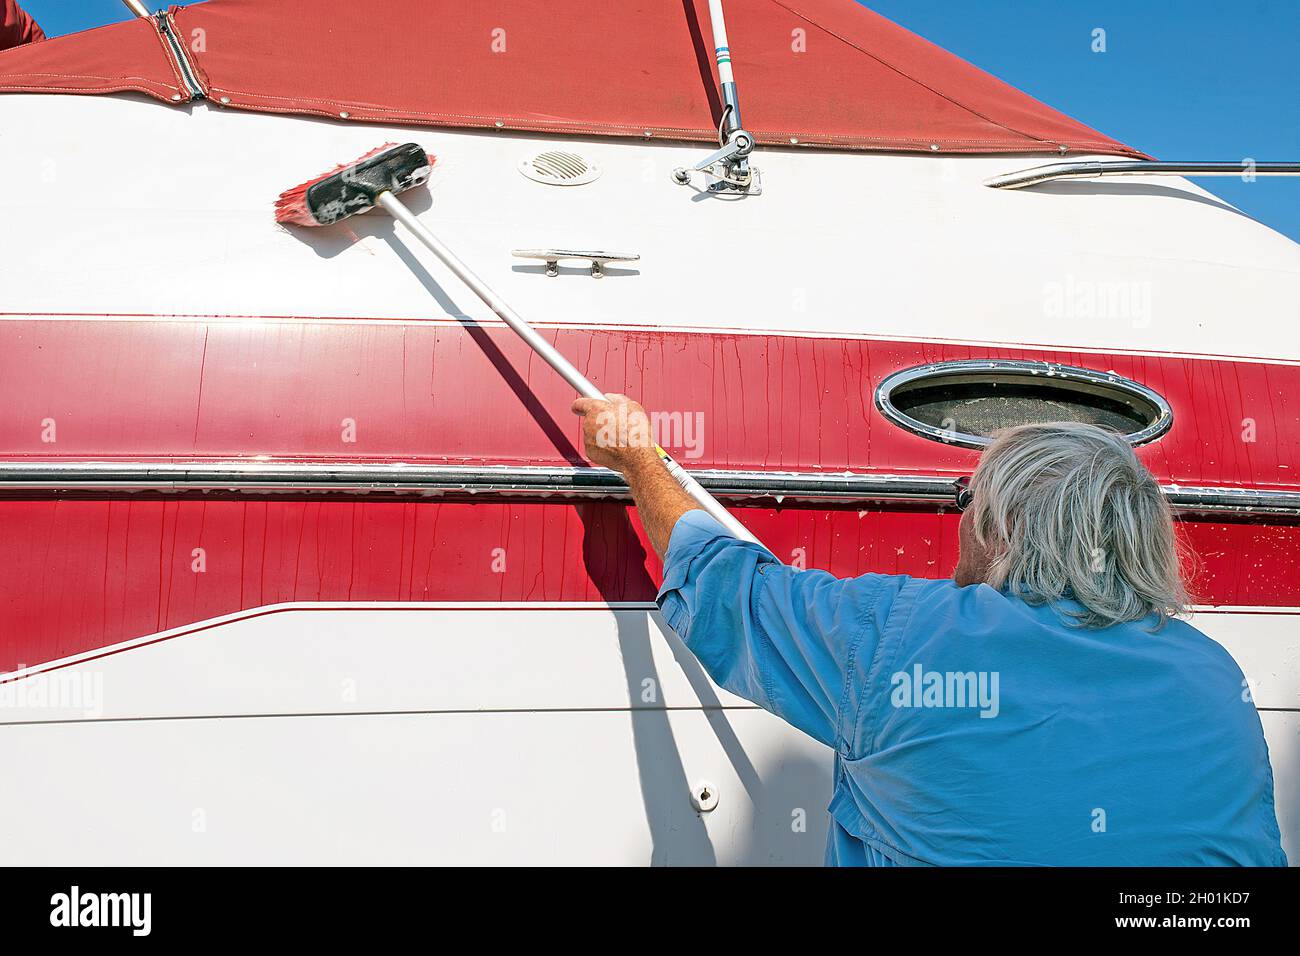 Älterer kaukasischer Mann, der ein rot-weißes Boot mit einer Bürste mit langem Griff wascht Stockfoto